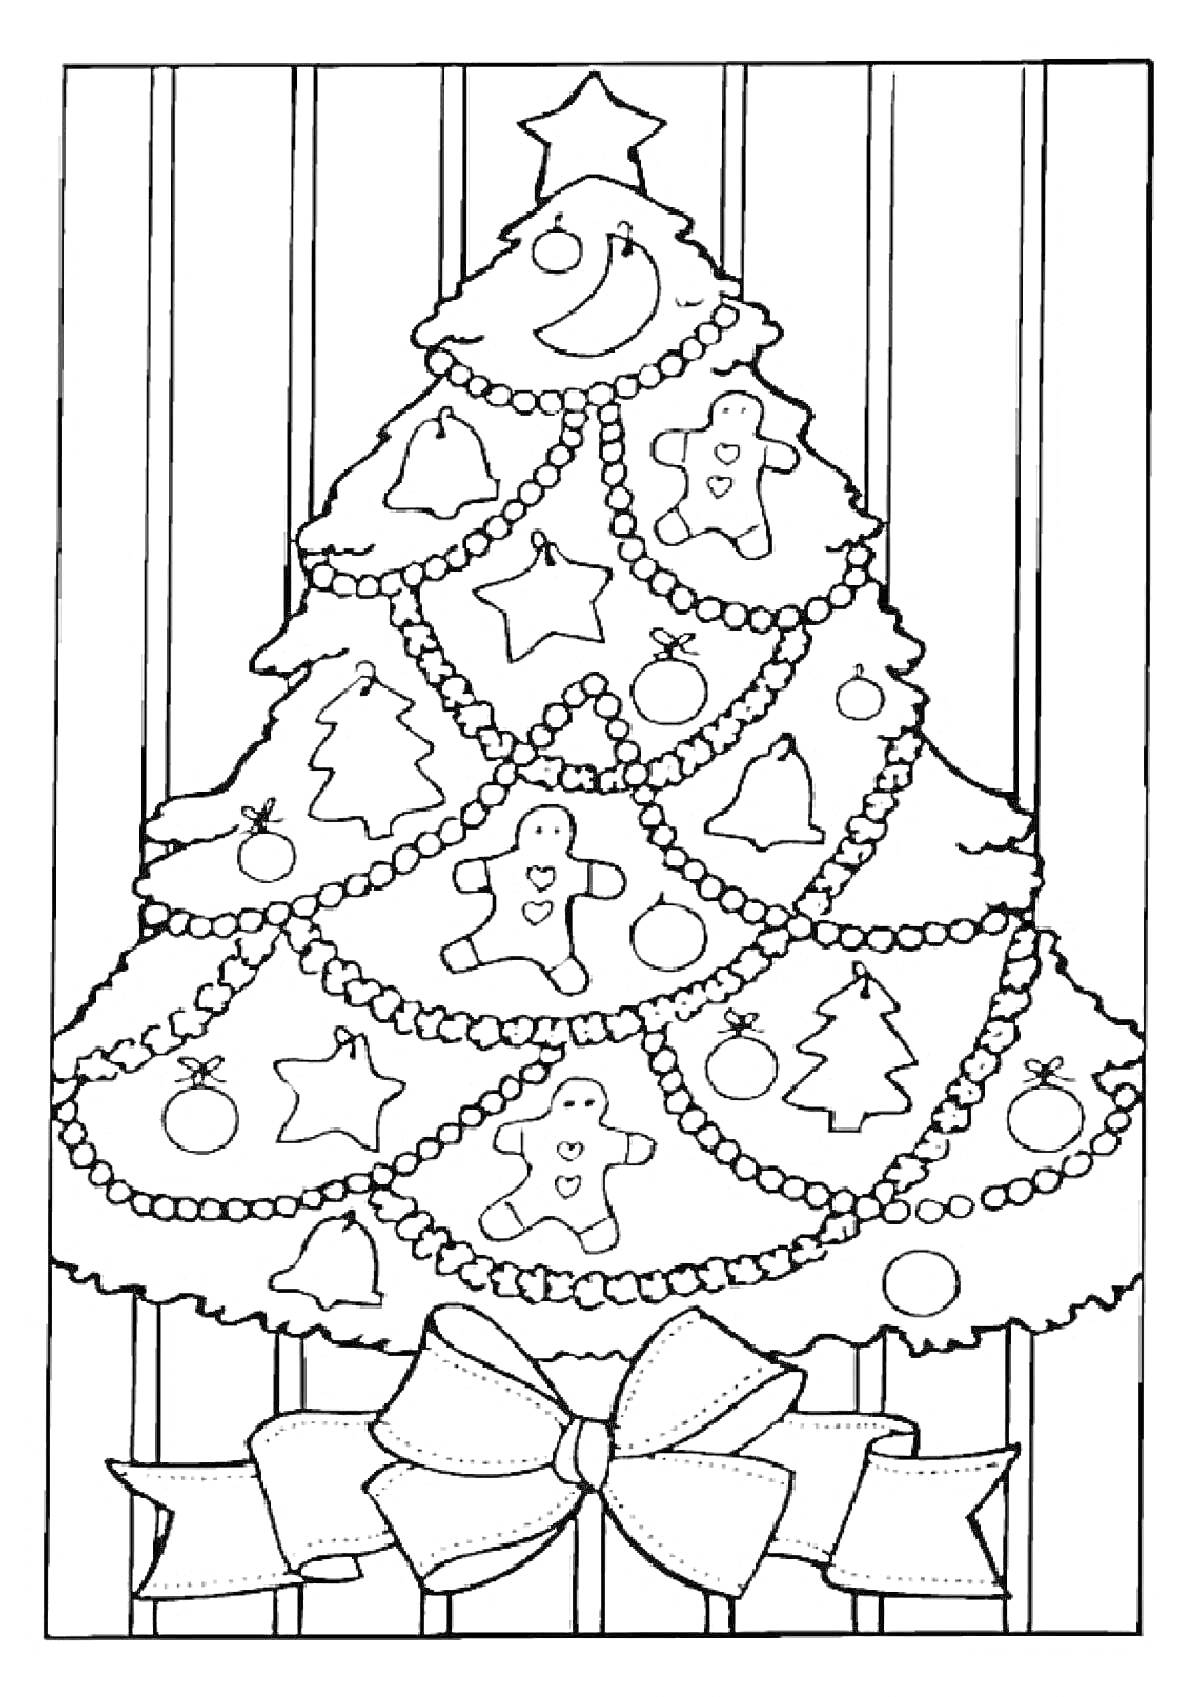 Раскраска новогодняя елка с луной, пряничными человечками, шарами, звездами, шариками, подарком с бантом на фоне с вертикальными линиями